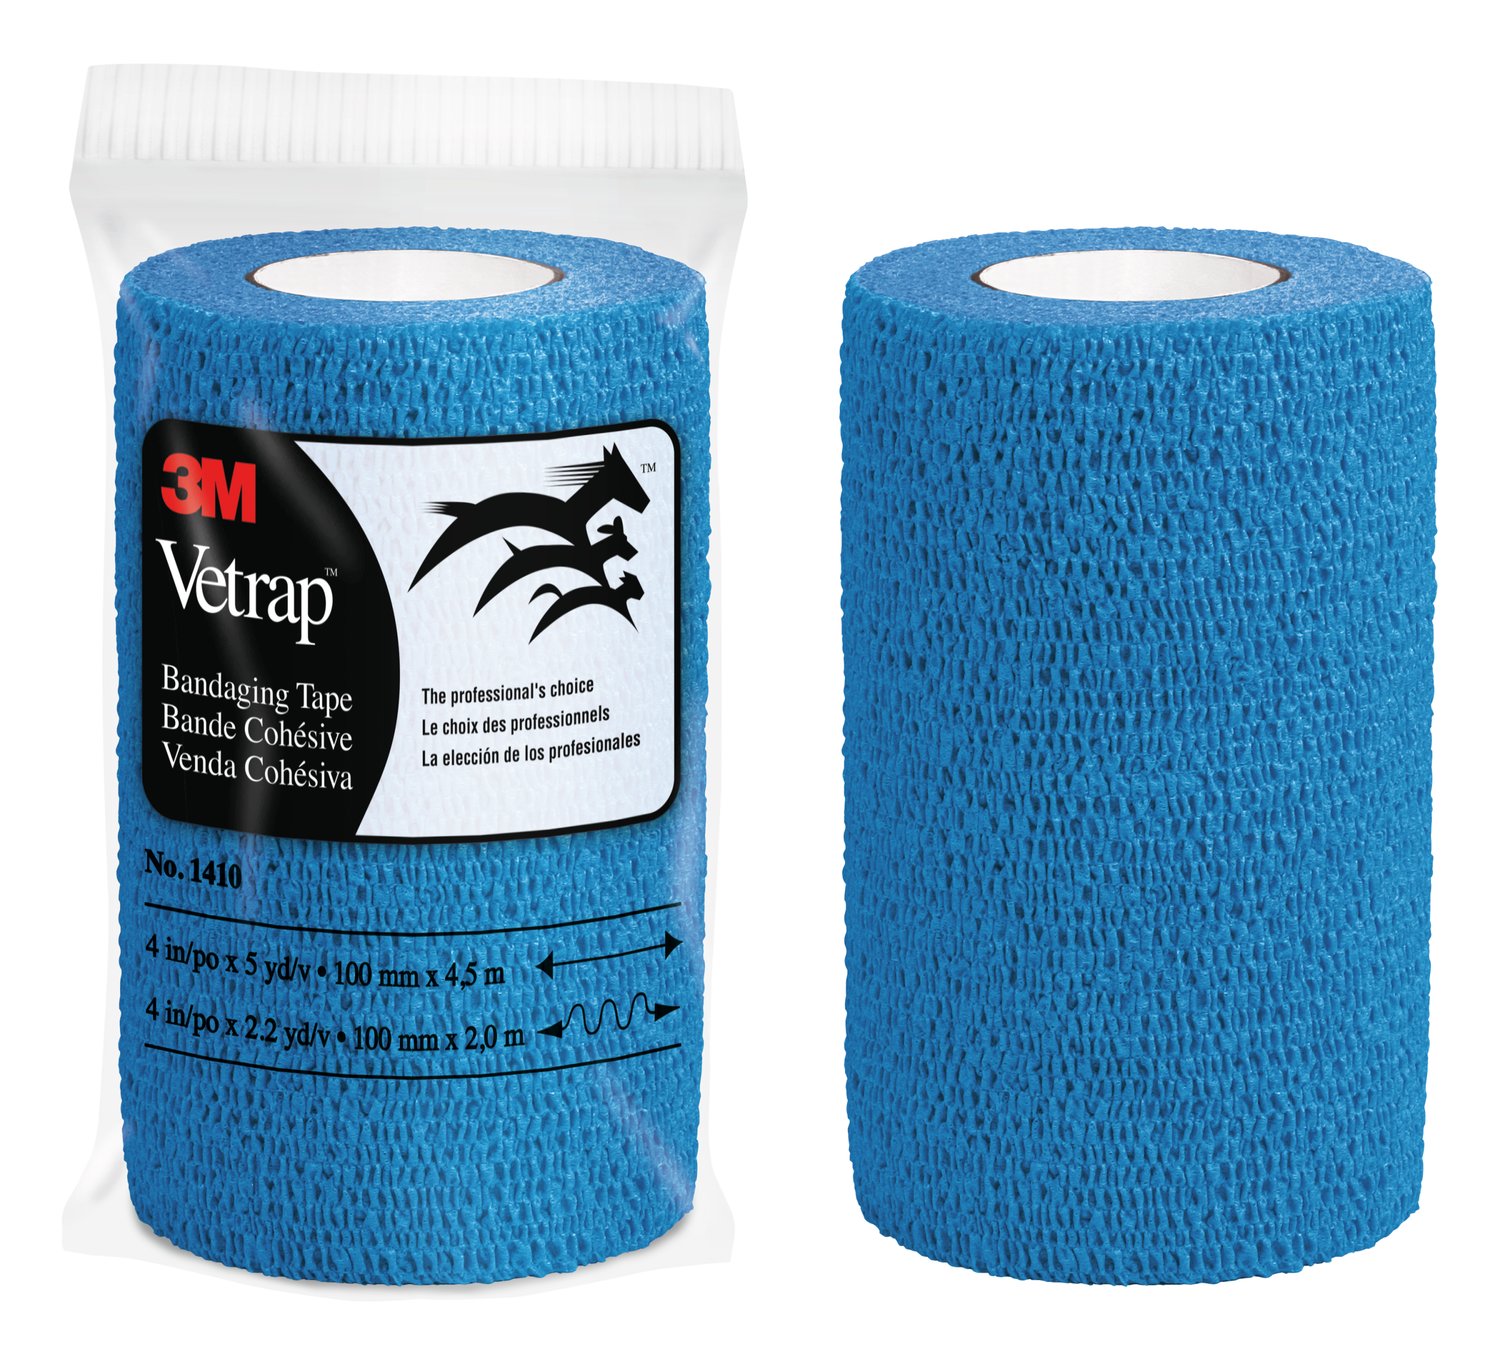 7100031643 - 3M Vetrap Bandaging Tape 1410B-18, Blue, 4 in x 5 yd (100 mm x 4.5 m), 18 Rolls/Case